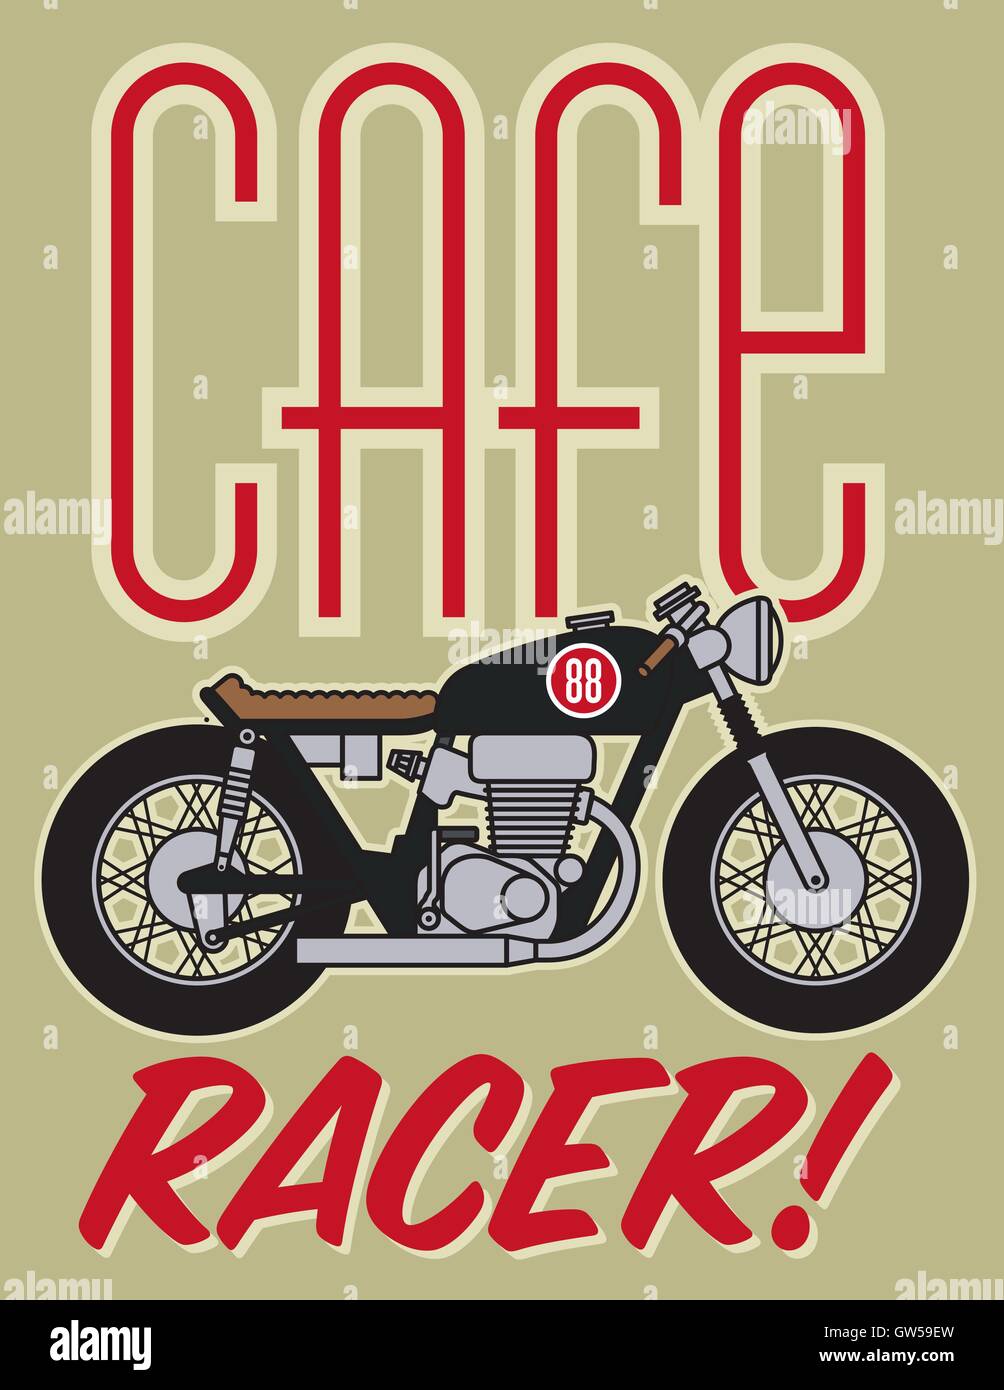 Cafe Racer Motorcycle Vector Design. Avec moto vintage Cafe Racer graphiques. Illustration de Vecteur